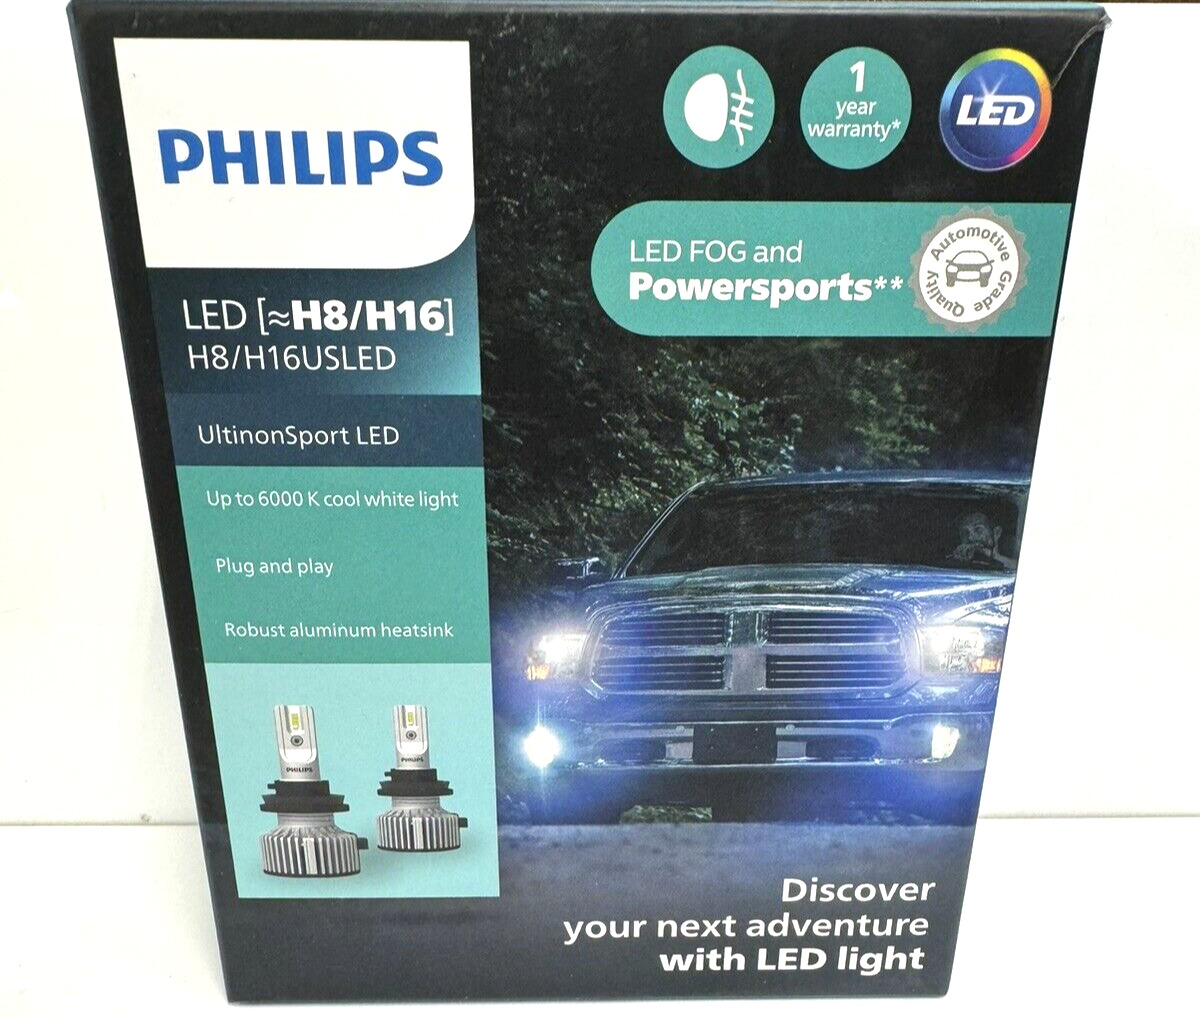 PHILIPS UltinonSport H16 LED Fog Lights